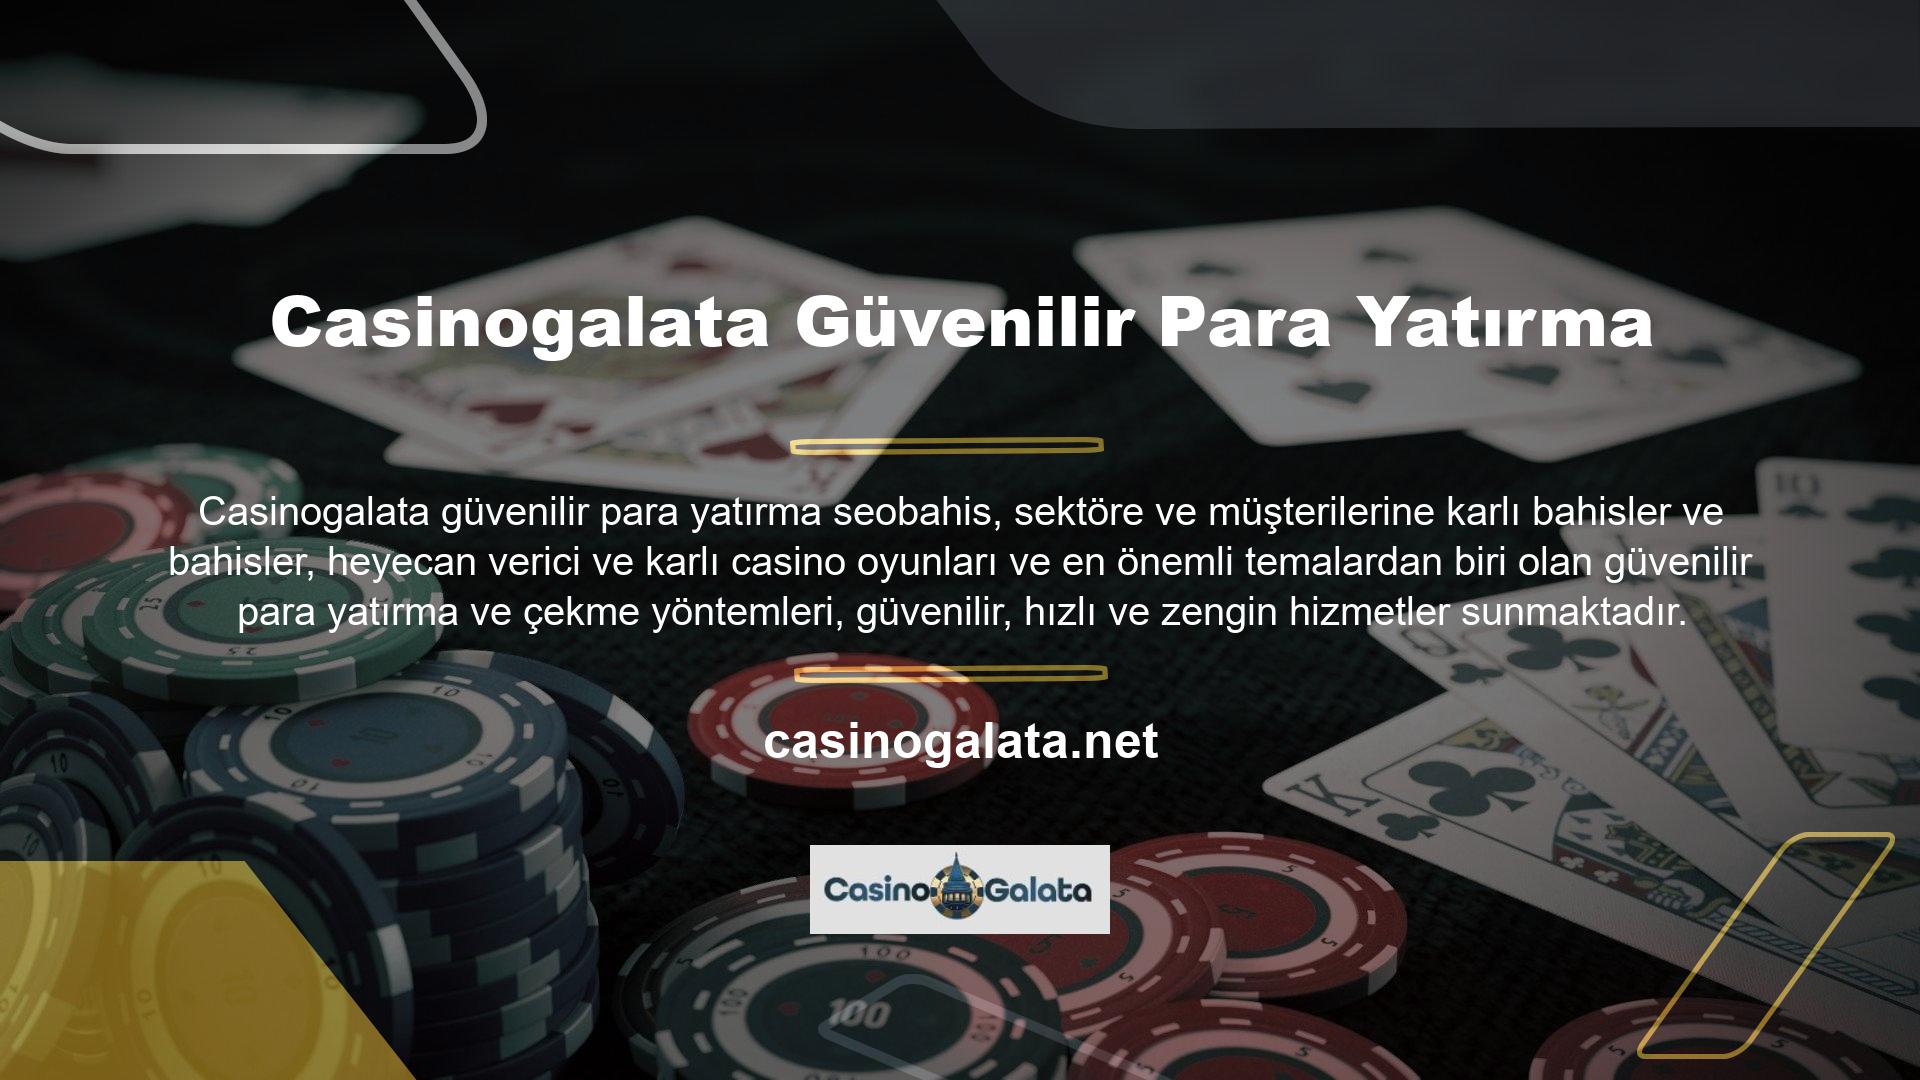 Casinogalata, kullanıcılarına sunduğu para yatırma yöntemlerinin çeşitliliği ve cazip bonus kampanyalarıyla sektörün dikkatini çekti